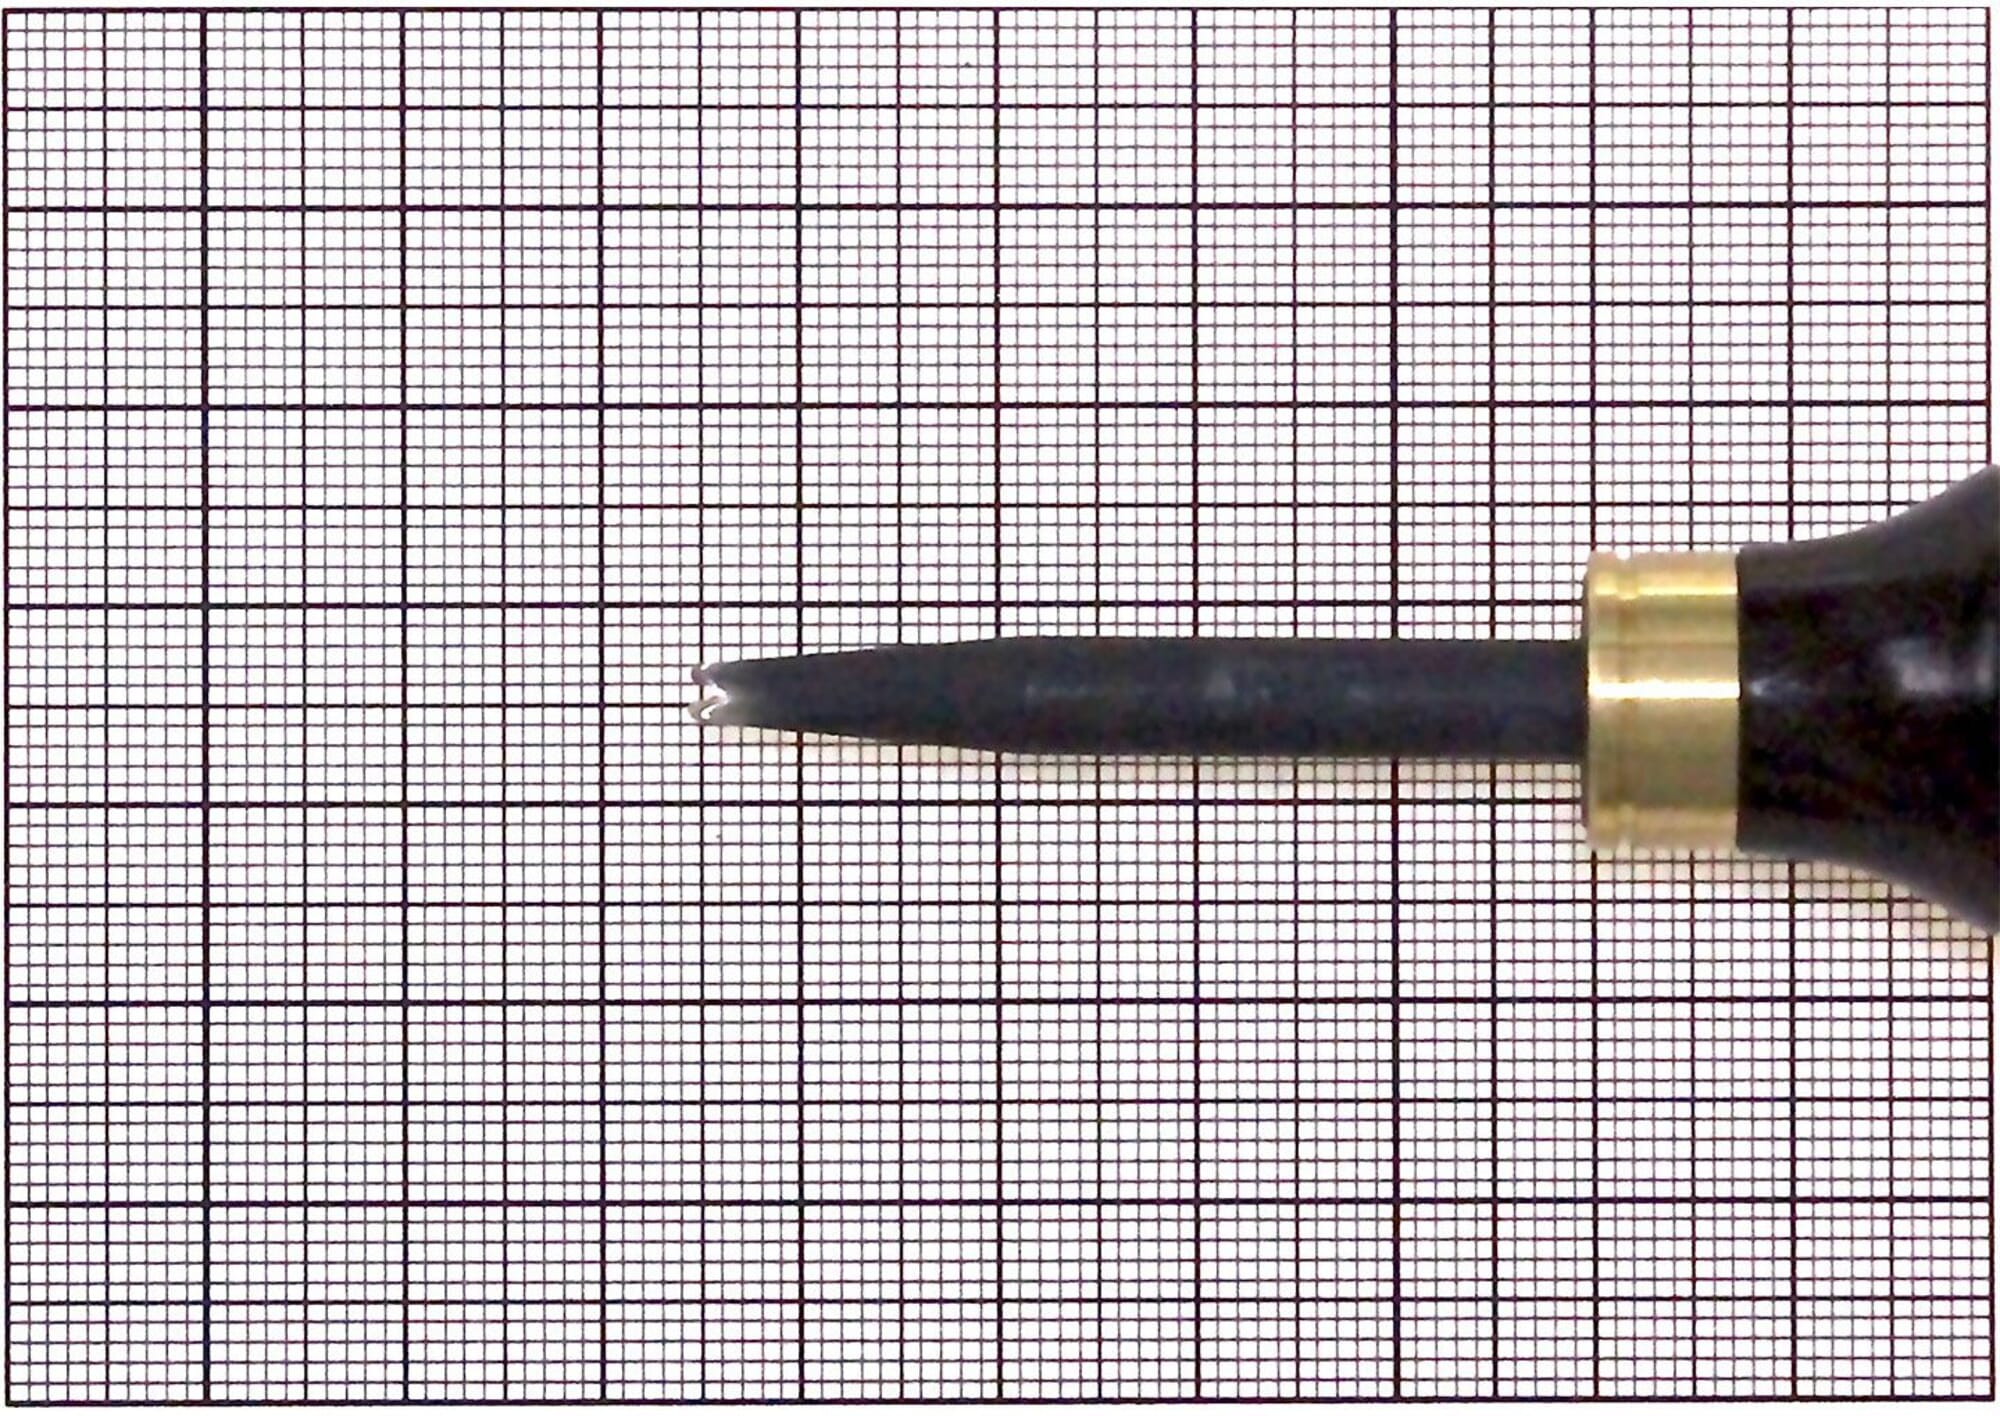 Kyoshin Elle Leathercraft Sewing Pricking Iron 6x3mm Stitching Punching Tool 3mm 6-Prong Diamond Point Leather Stitch Punch